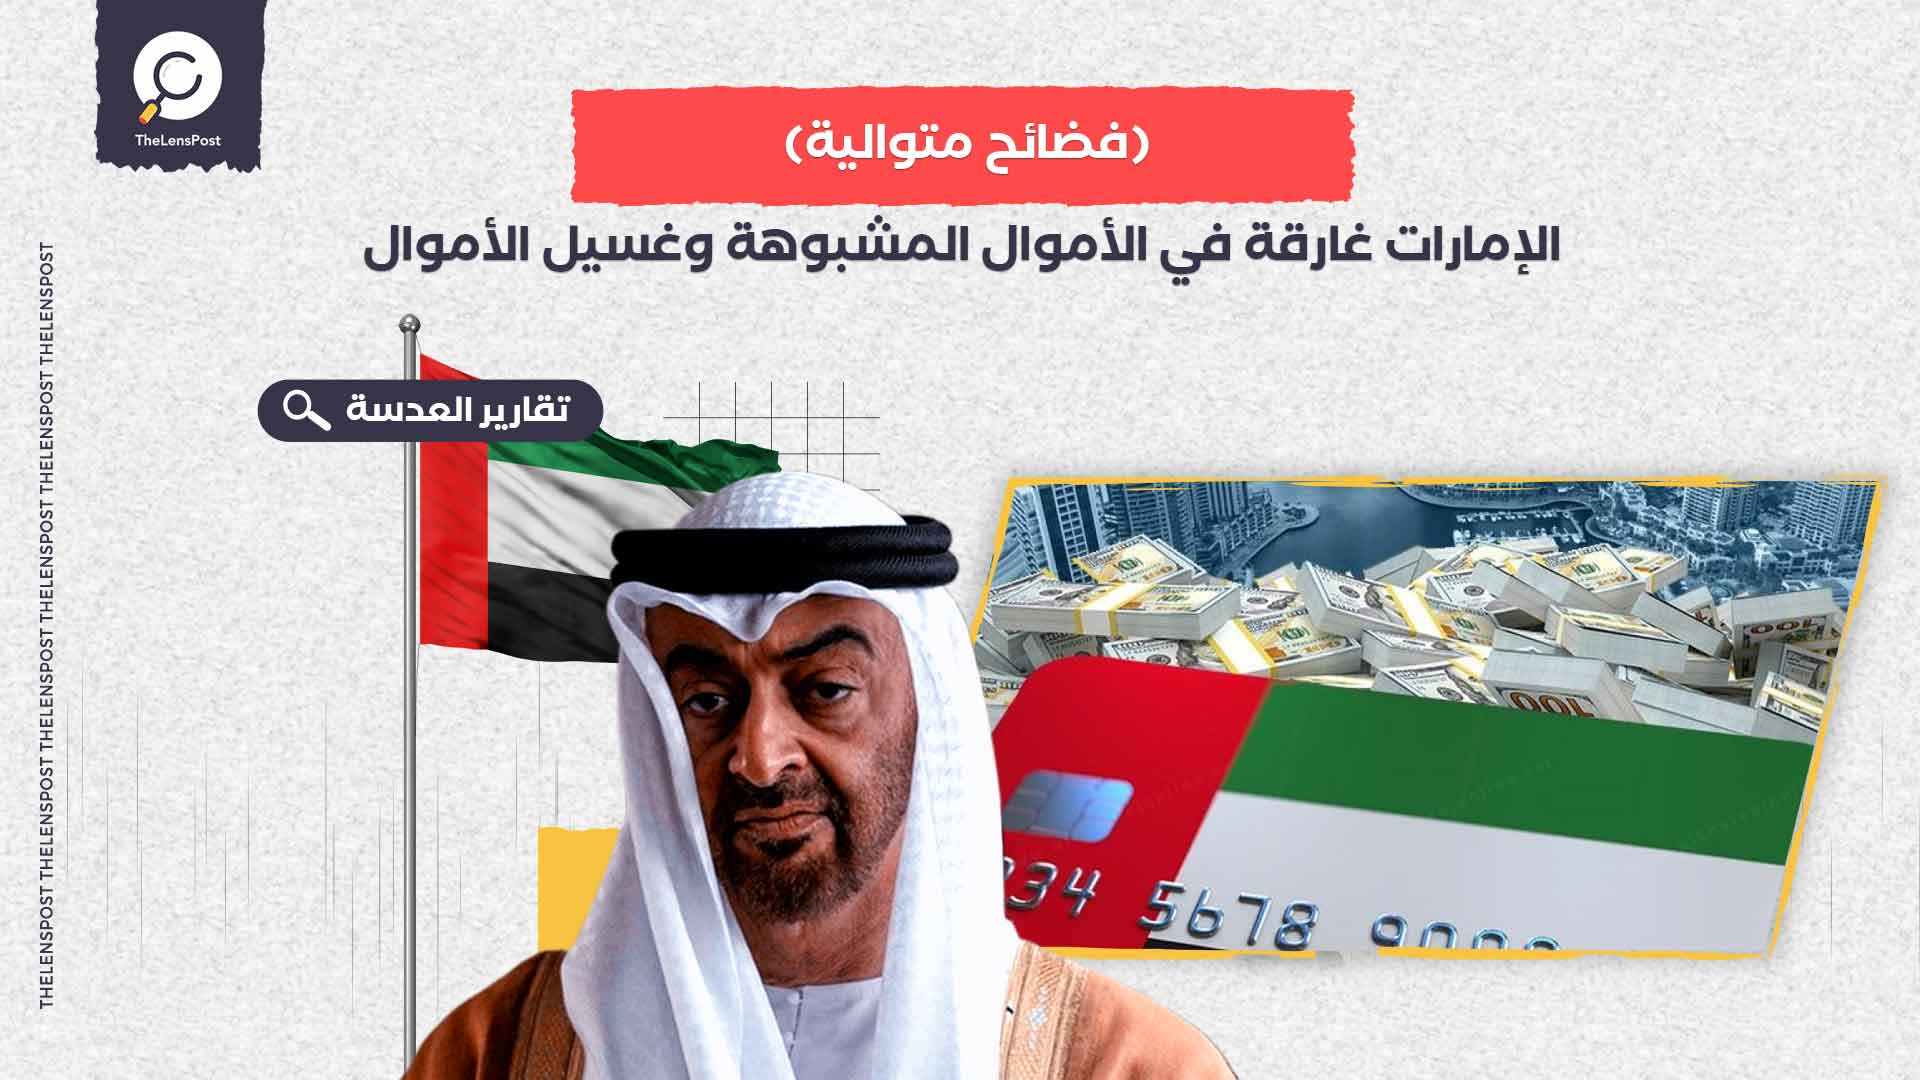 الإمارات-غارقة-في-الأموال-المشبوهة-وغسيل-الأموال